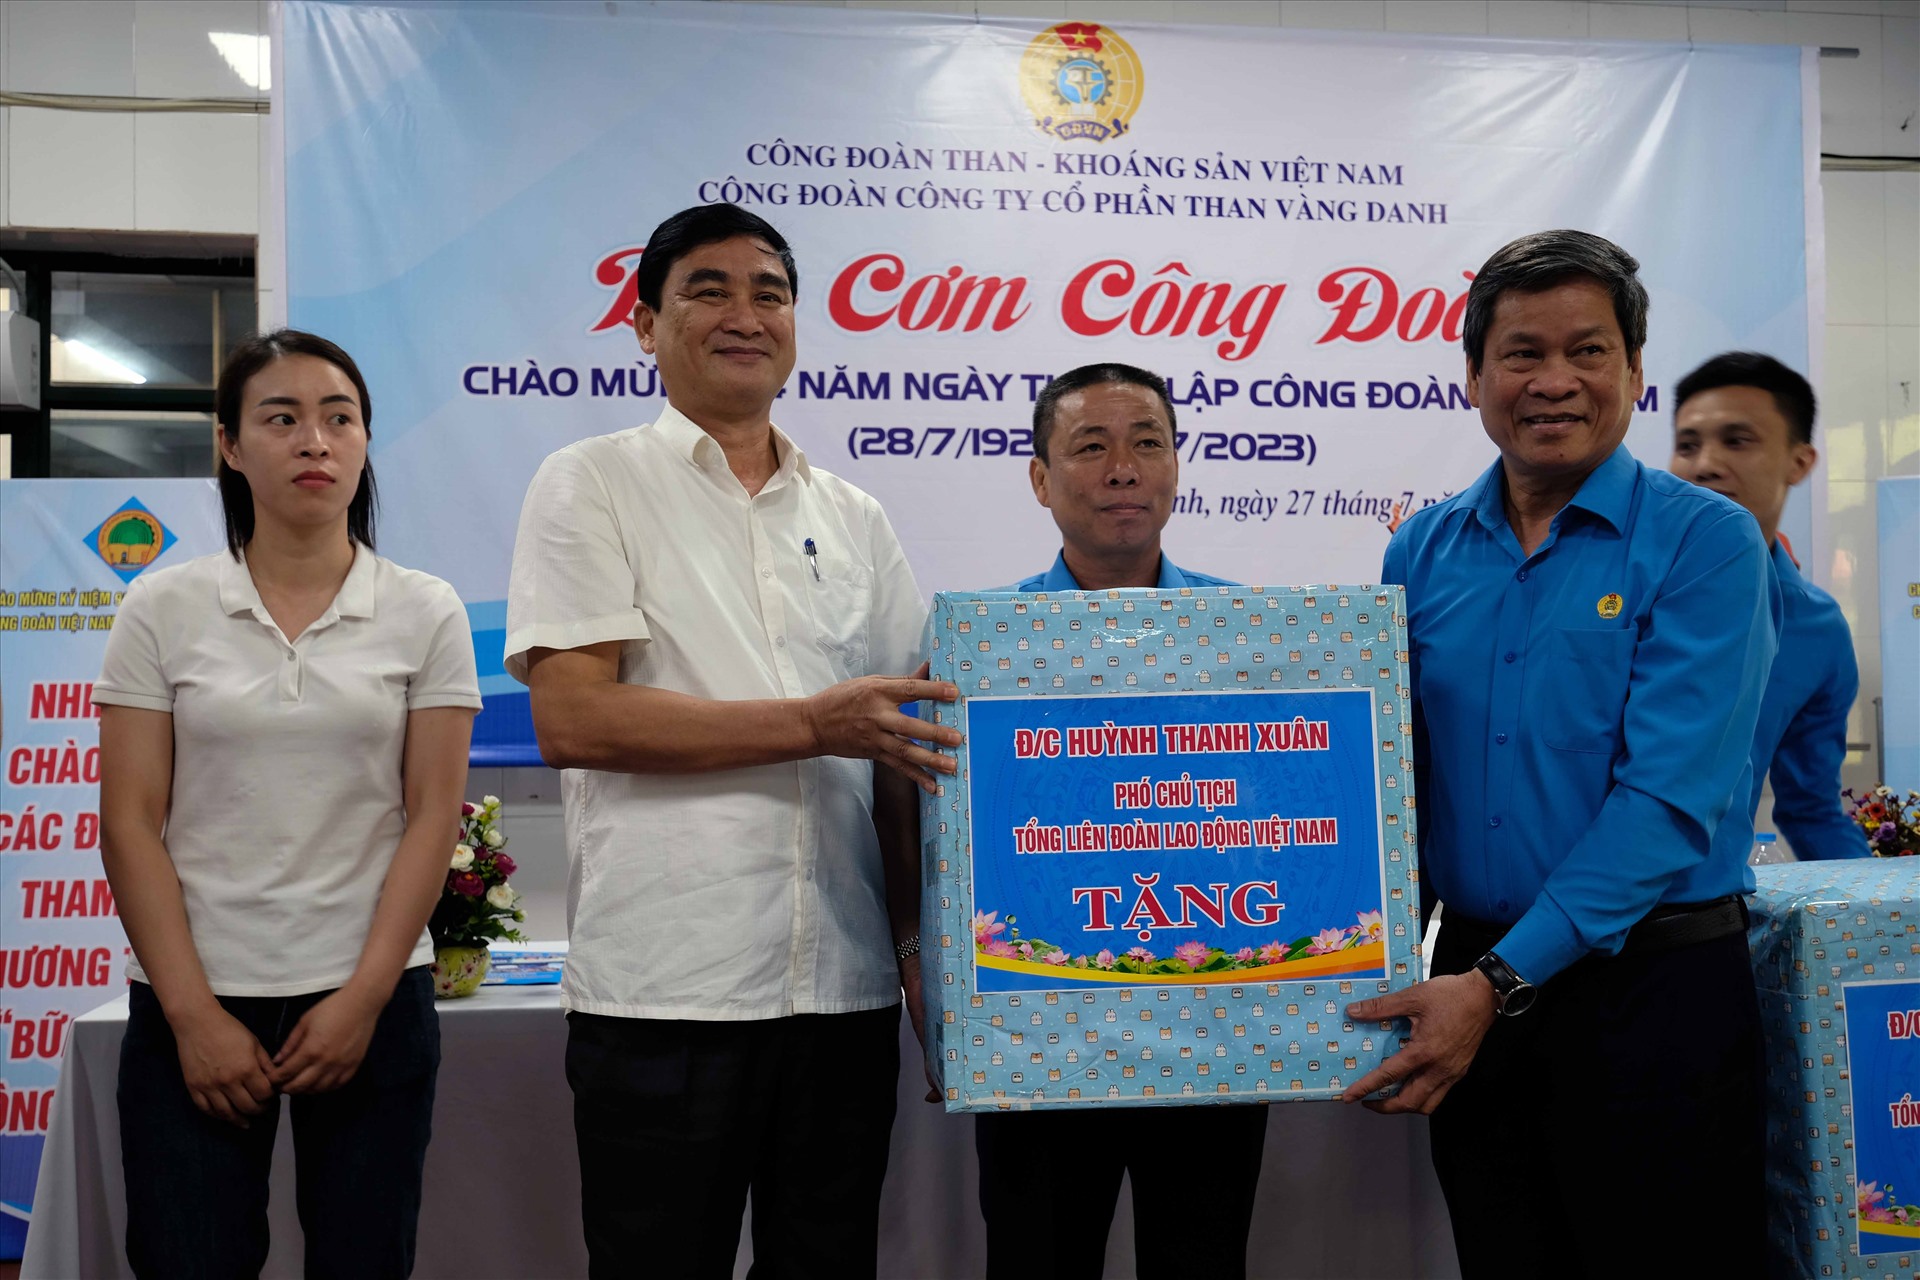 Phó Chủ tịch TLĐ Huỳnh Thanh Xuân trao tặng quà cho 4  tổ sản xuất, phân xưởng  của Công ty than Vàng Danh tại thành phố Uông Bí, tỉnh Quảng Ninh sáng ngày 27.7. Ảnh: Trần  Ngọc Duy